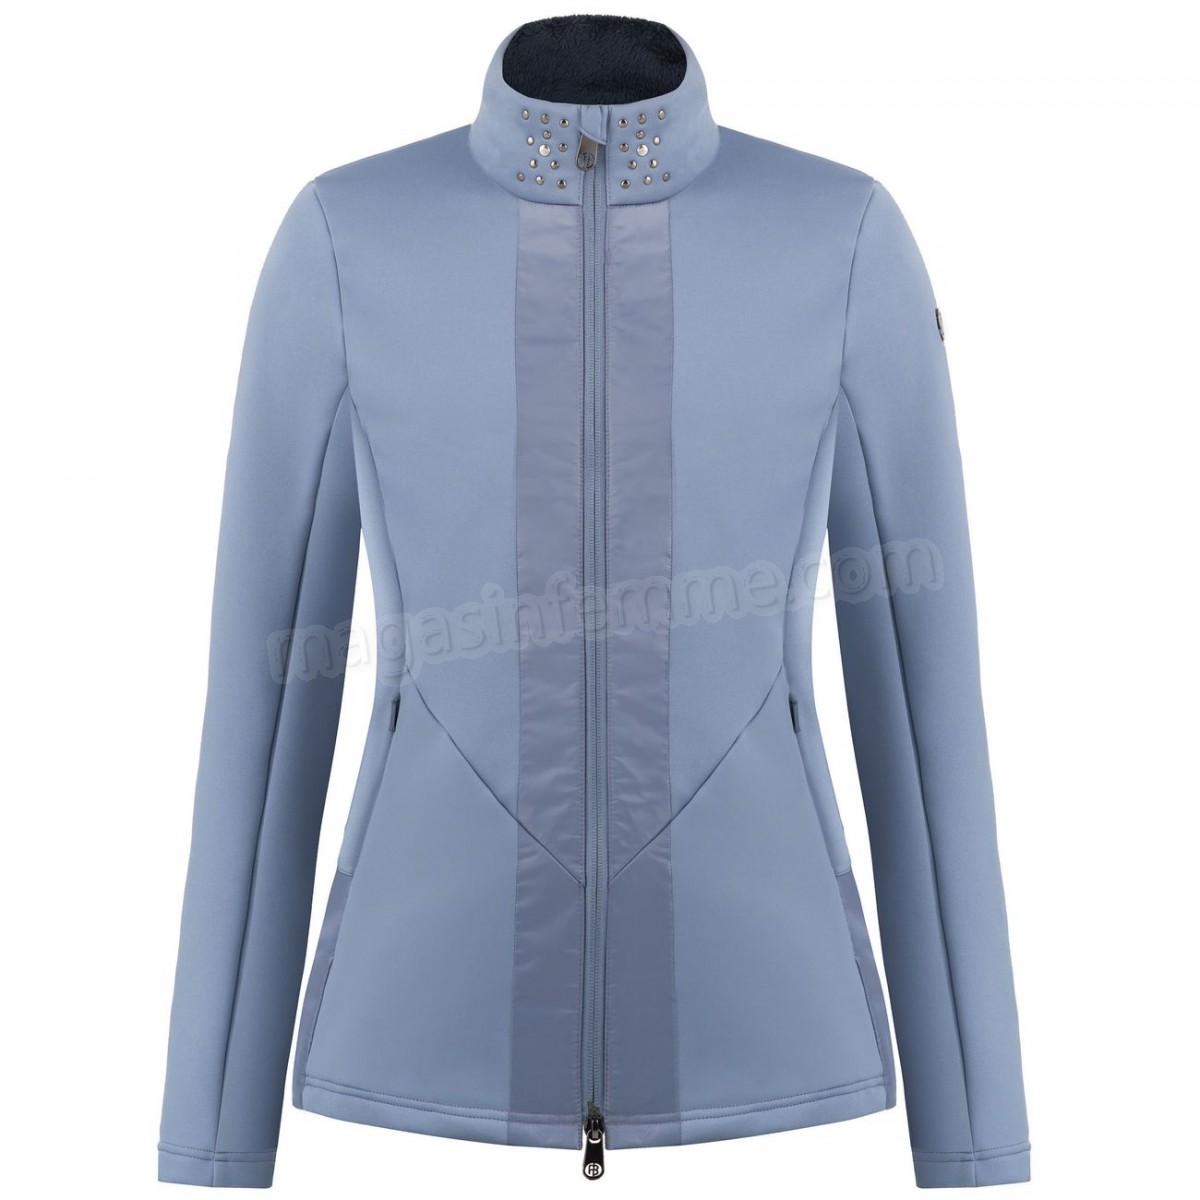 Poivre Blanc-Sports d'hiver femme POIVRE BLANC Veste En Polaire Poivre Blanc Hybrid Stretch Fleece Jacket 1702 Shadow Blue Femme en solde - -0